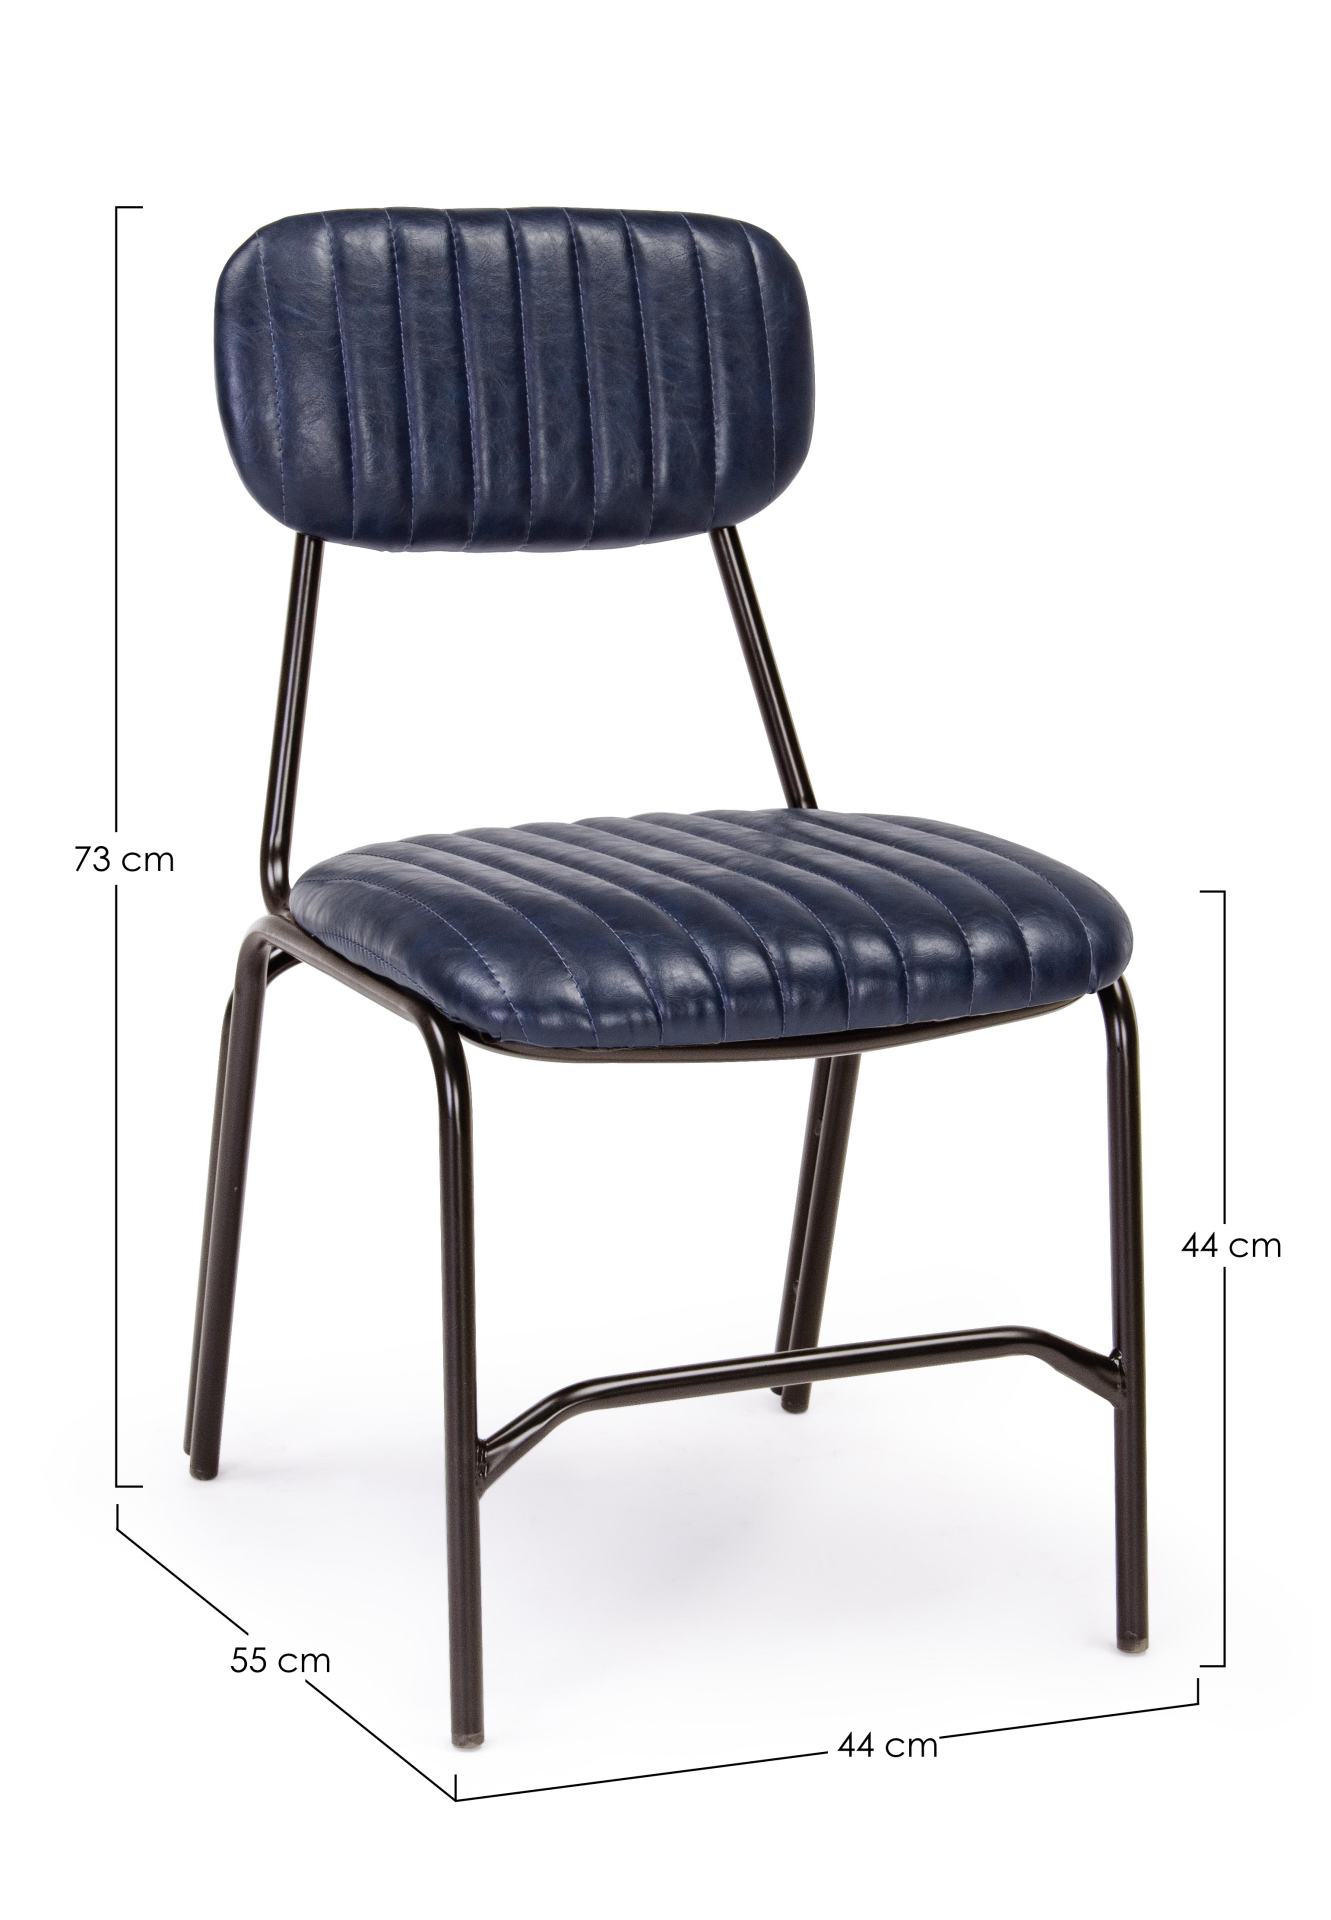 Der Stuhl Debbie überzeugt mit seinem industriellen Design. Gefertigt wurde der Stuhl aus Kunstleder, welches einen blauen Farbton besitzt. Das Gestell ist aus Metall und ist Schwarz. Die Sitzhöhe beträgt 44 cm.